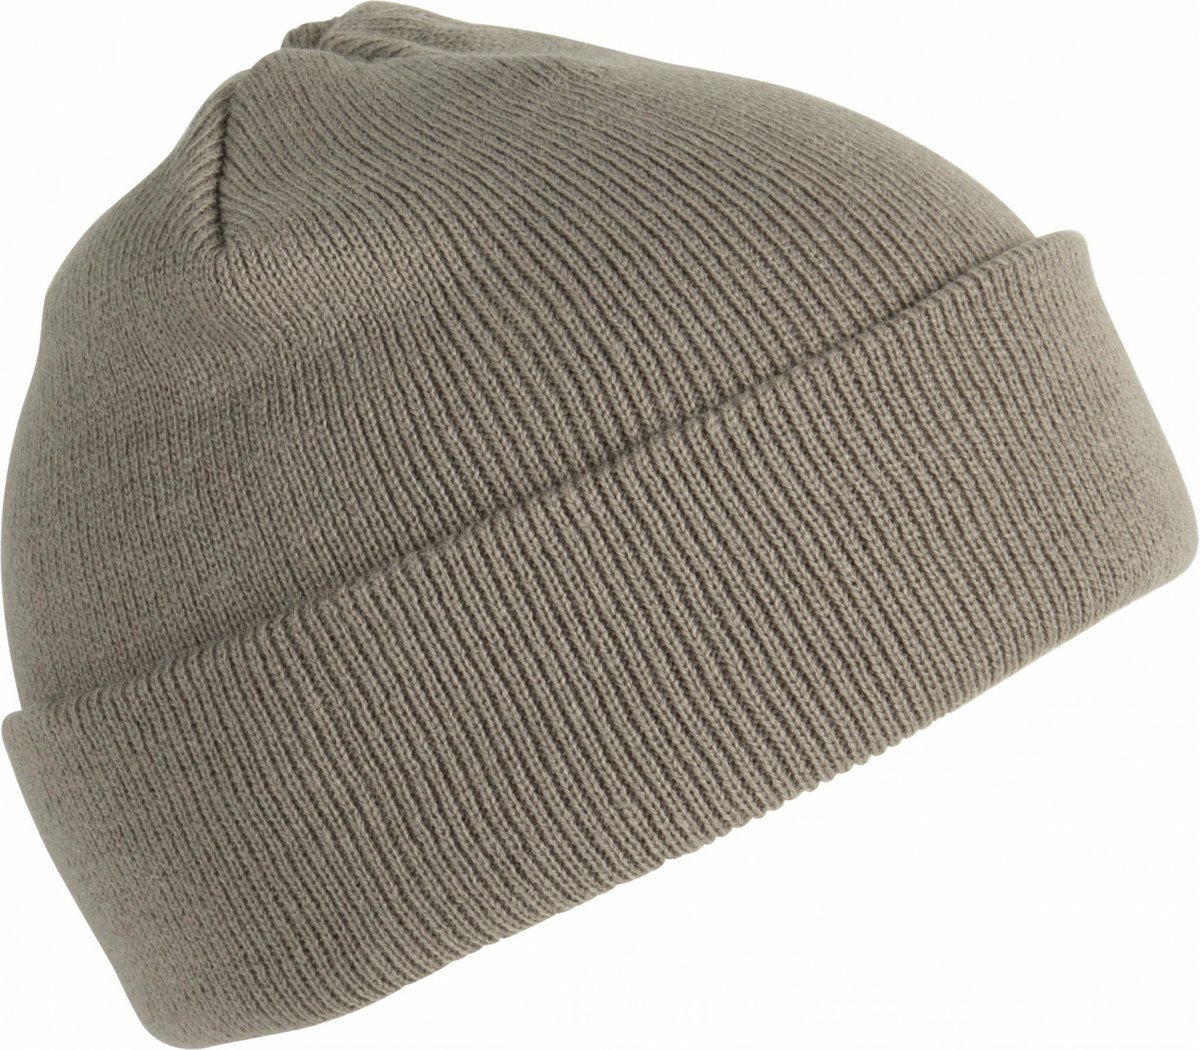 K-up Hats Wintermuts Beanie Yukon - grijs - heren/dames - sterk/zacht/licht gebreid 100% Acryl - Dames/herenmuts